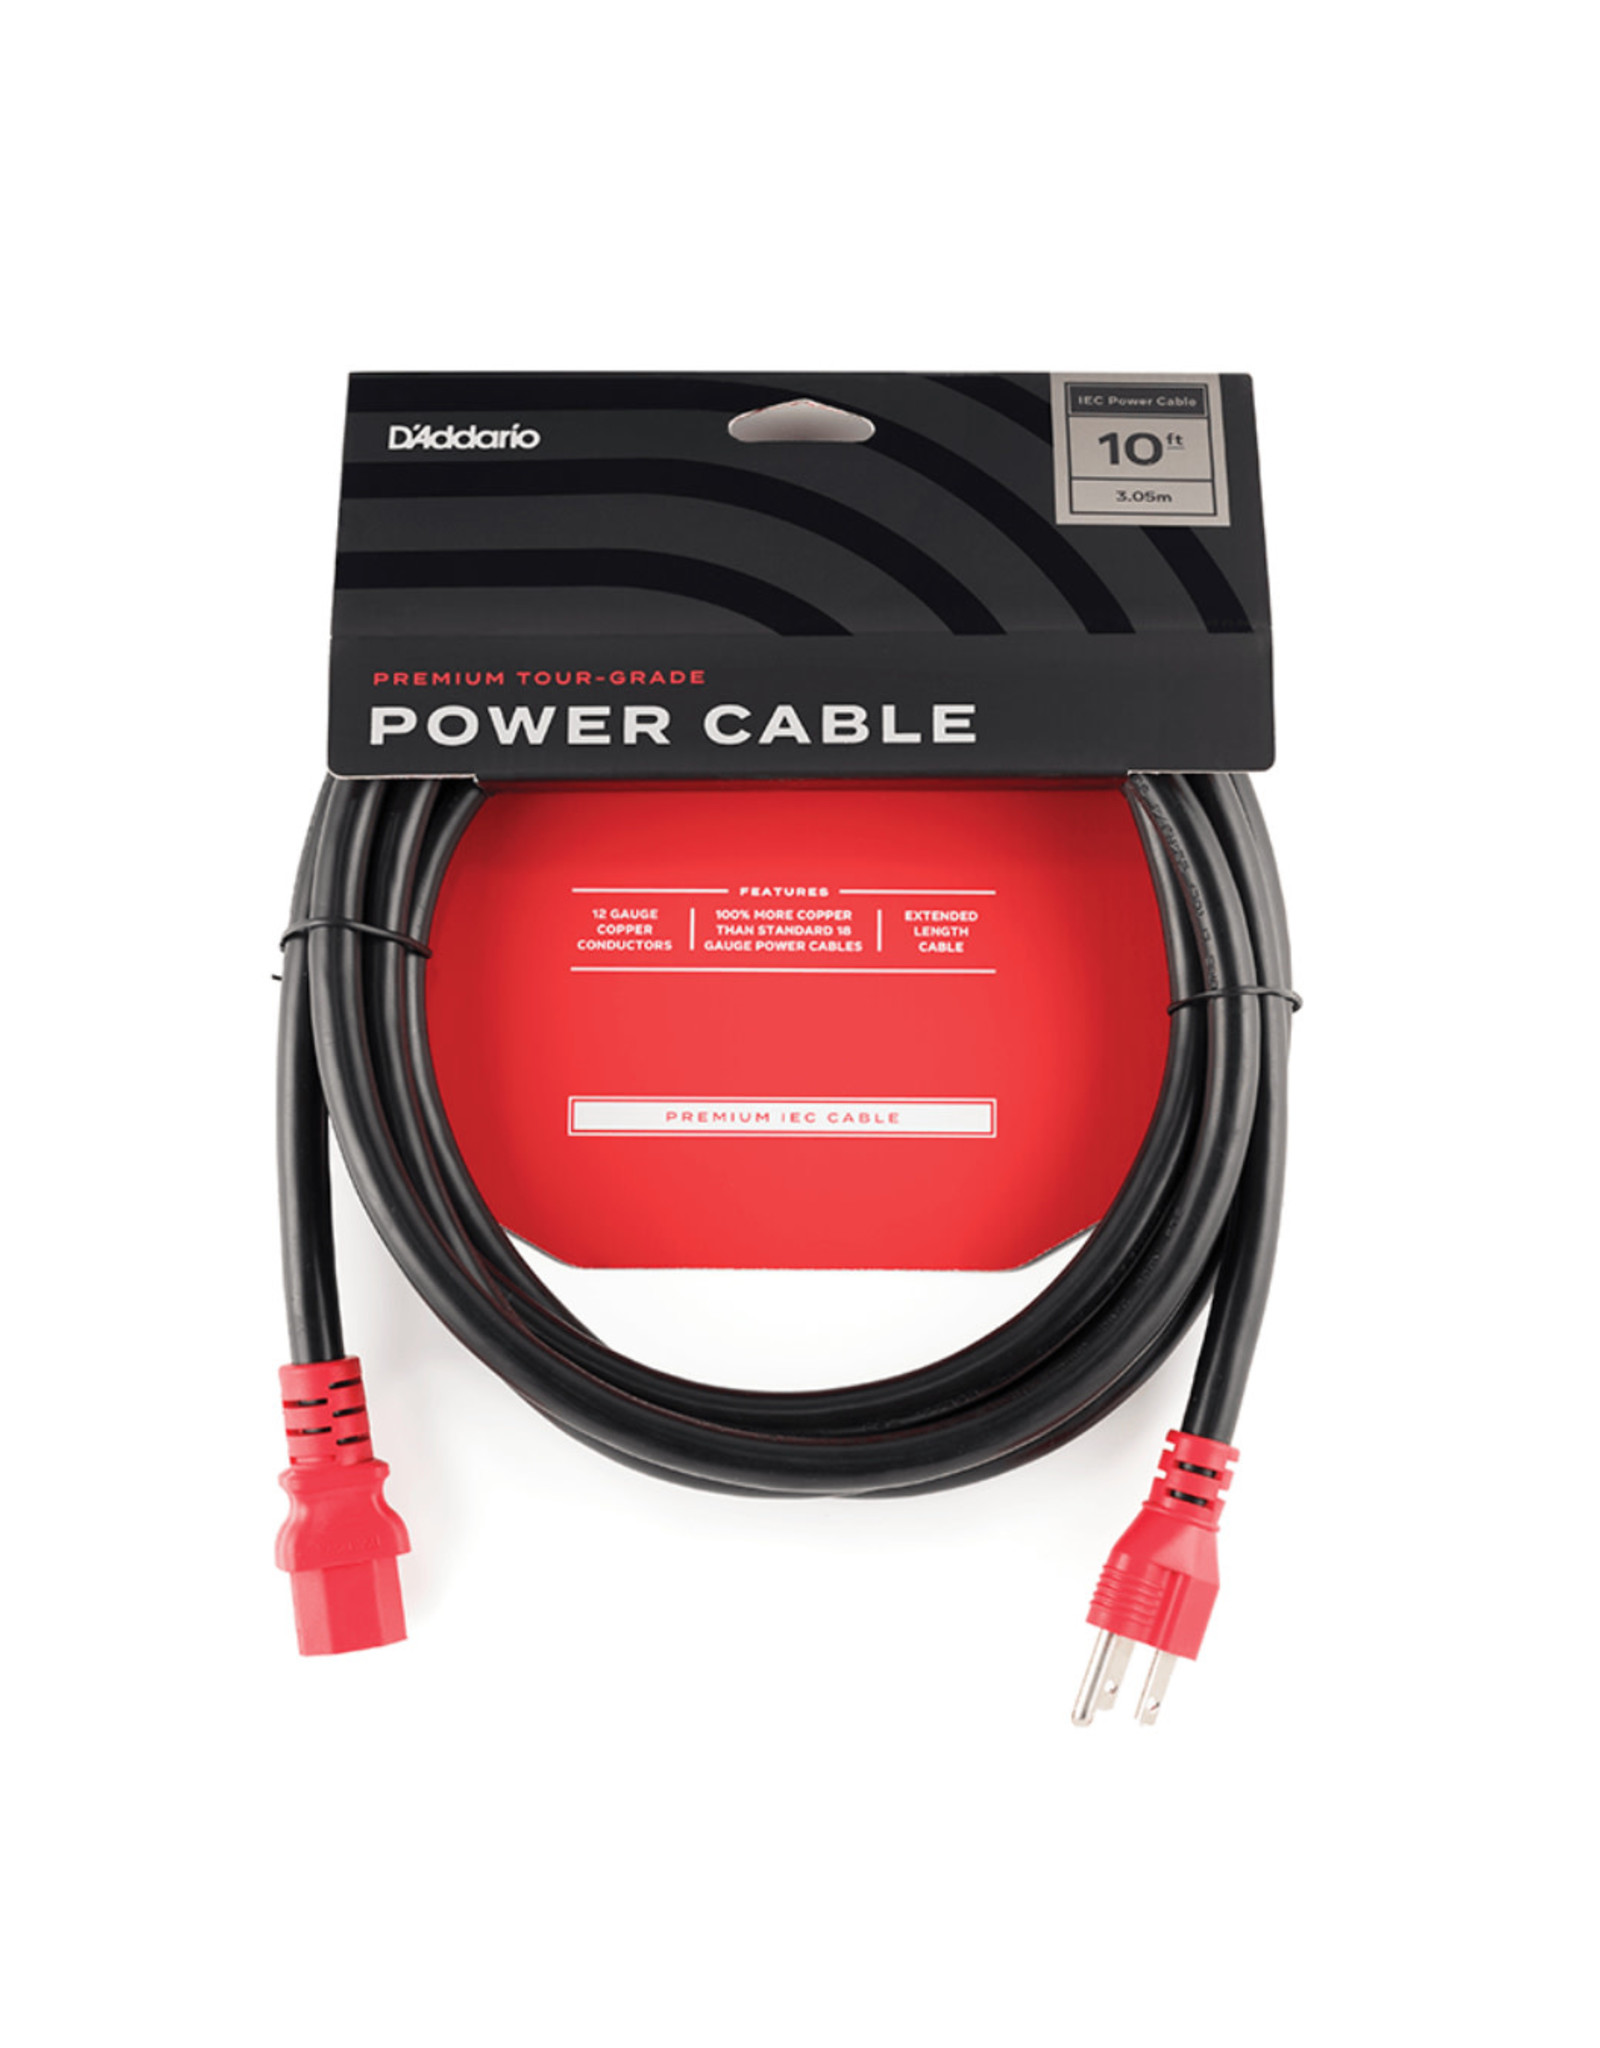 D'Addario D'Addario IEC to NEMA Premium Tour-Grade AC Power Cable - 10' (PW-IECB-10)